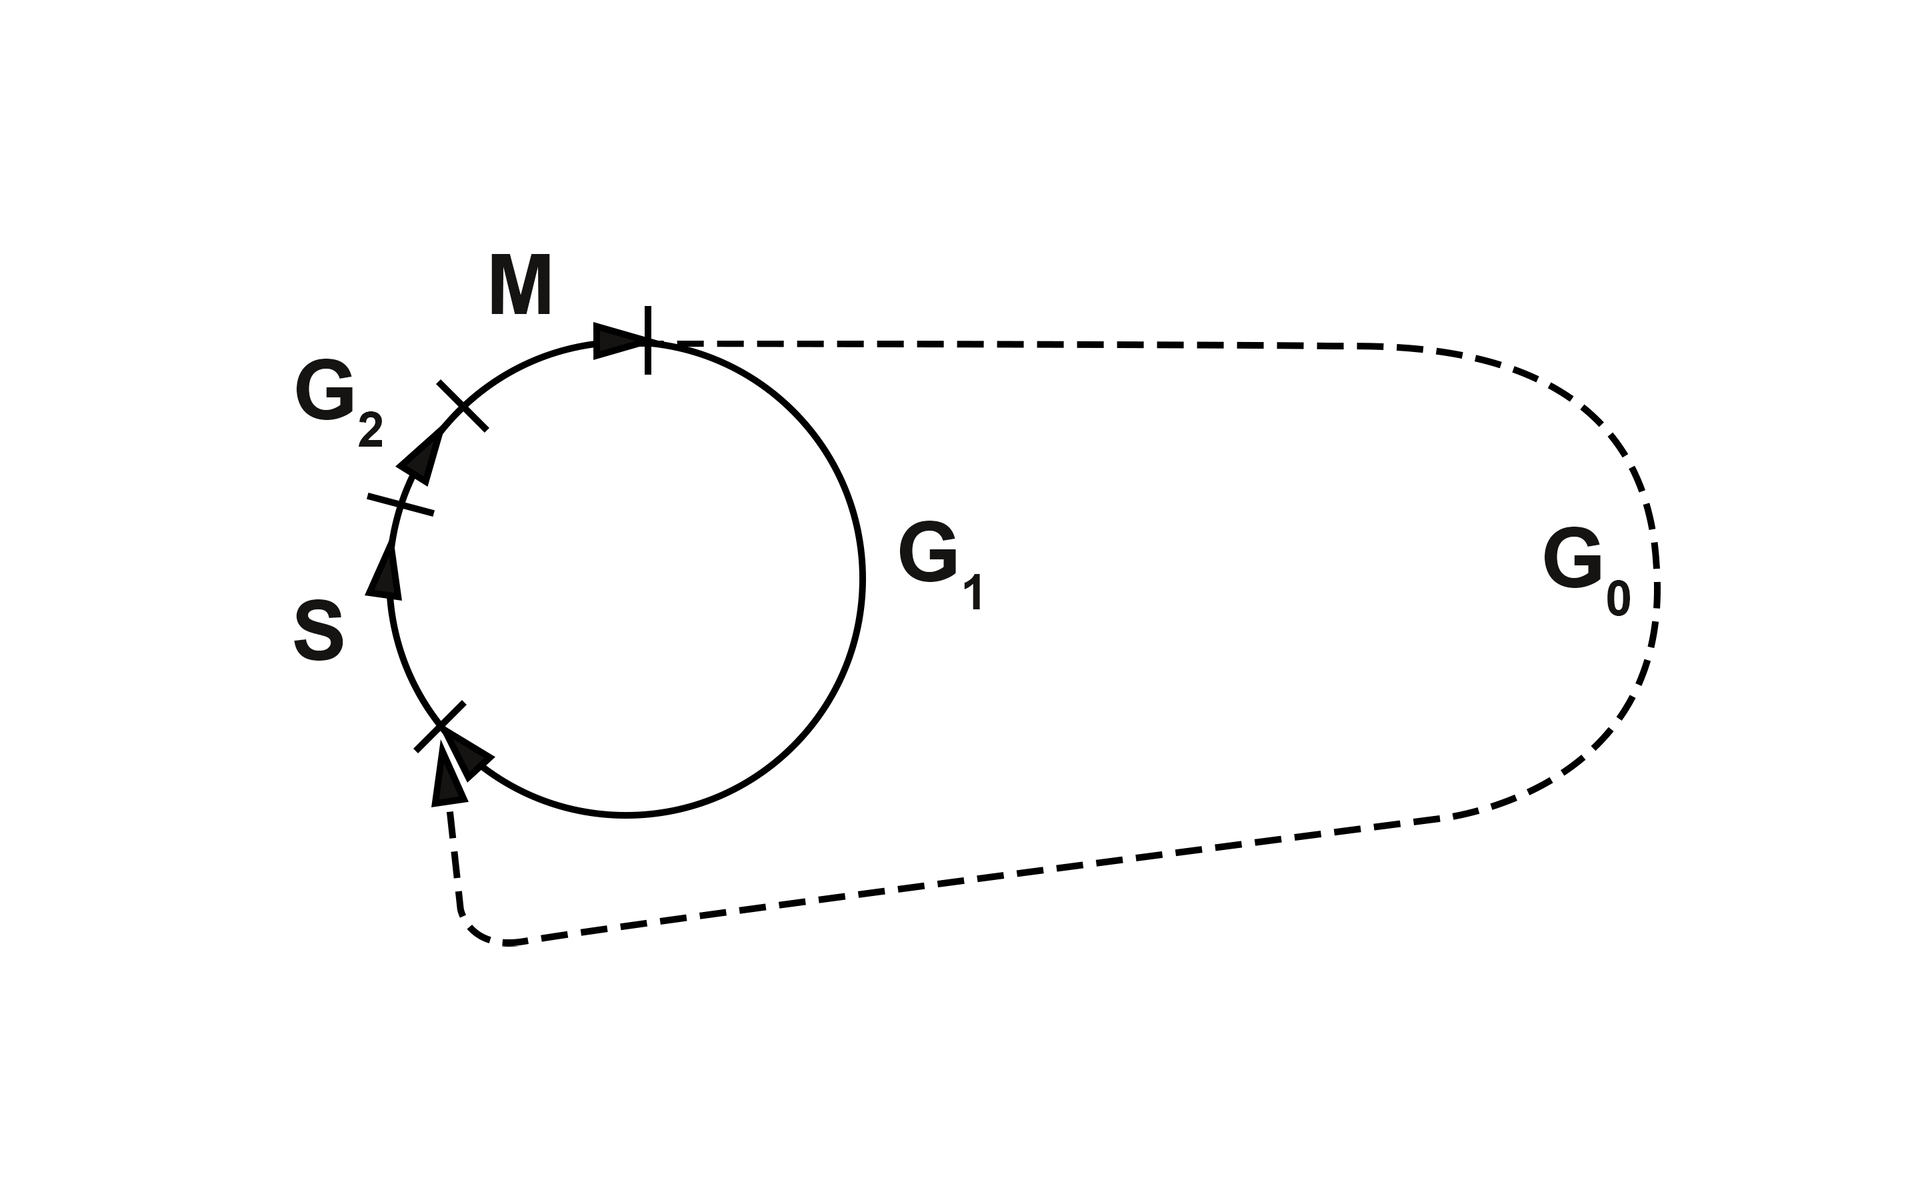 Grafika przedstawia schemat cyklu komórkowego. Na planie koła literami oznaczono kolejne fazy: mitozę, która następnie przechodzi w fazę G indeks dolny 1 lub G indeks dolny 0. Następnie następuje faza S, a na końcu faza G indeks dolny 2. 